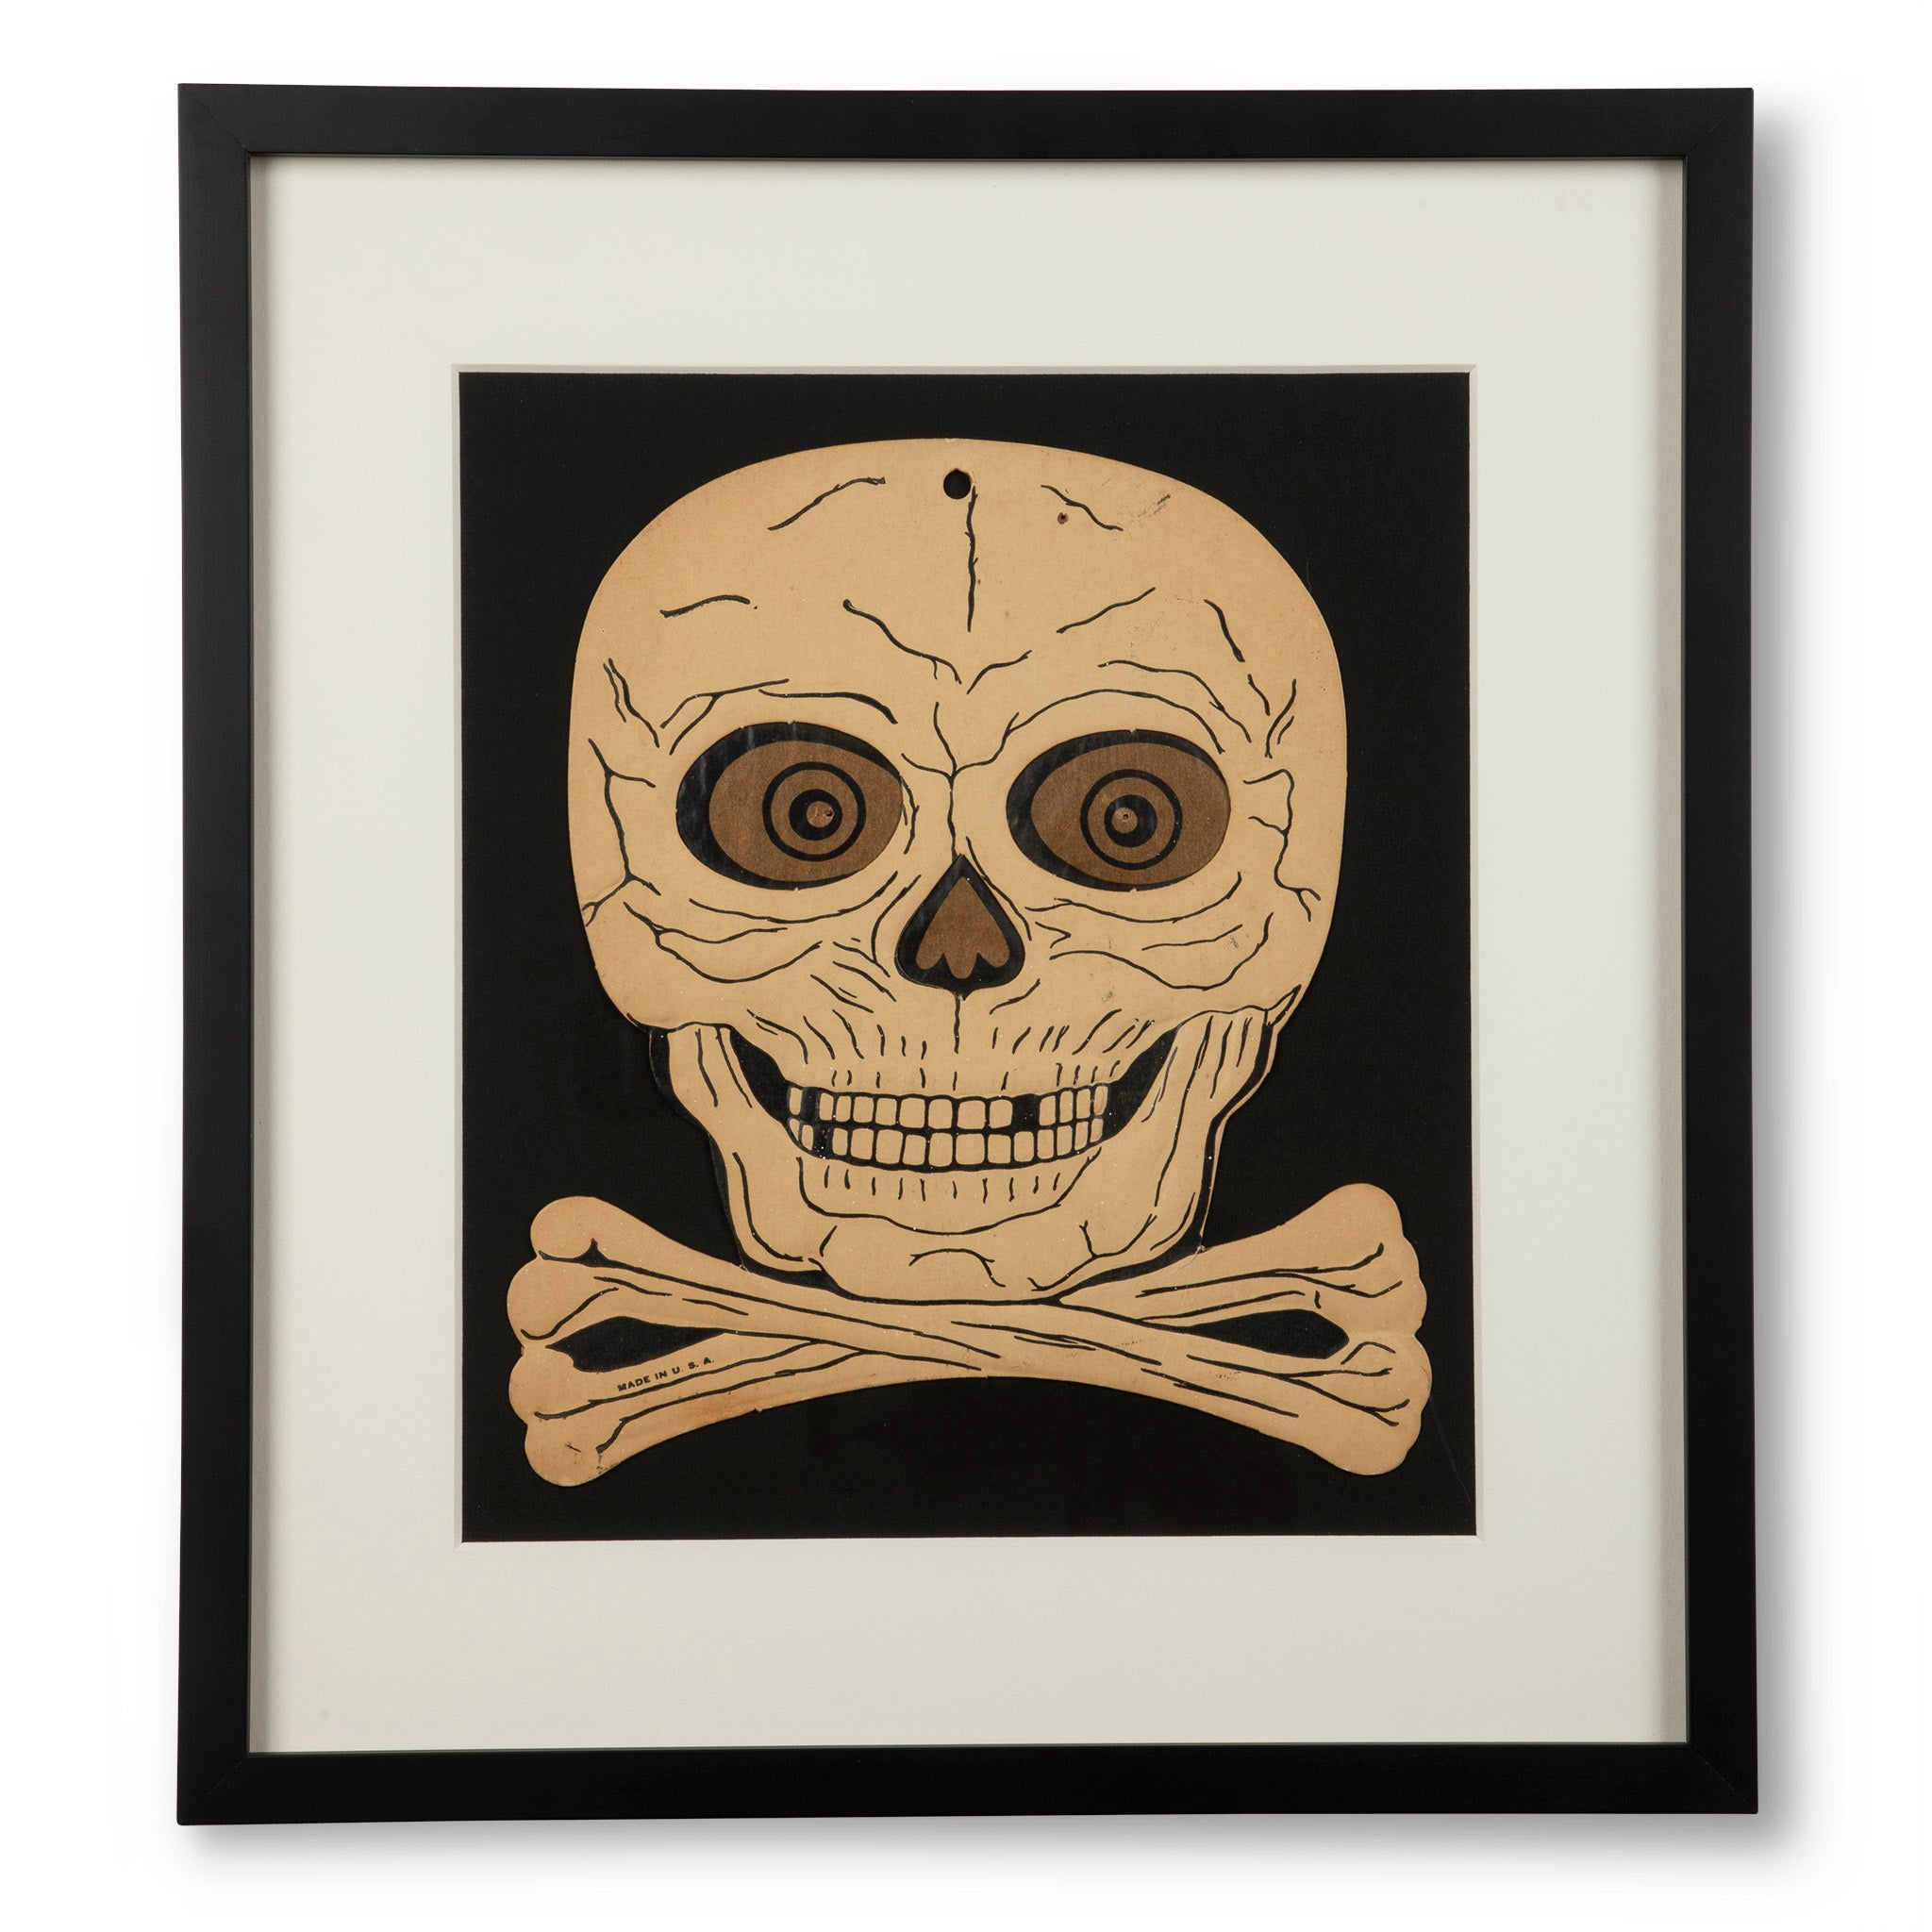 Framed Vintage Skull and Crossbones Decoration